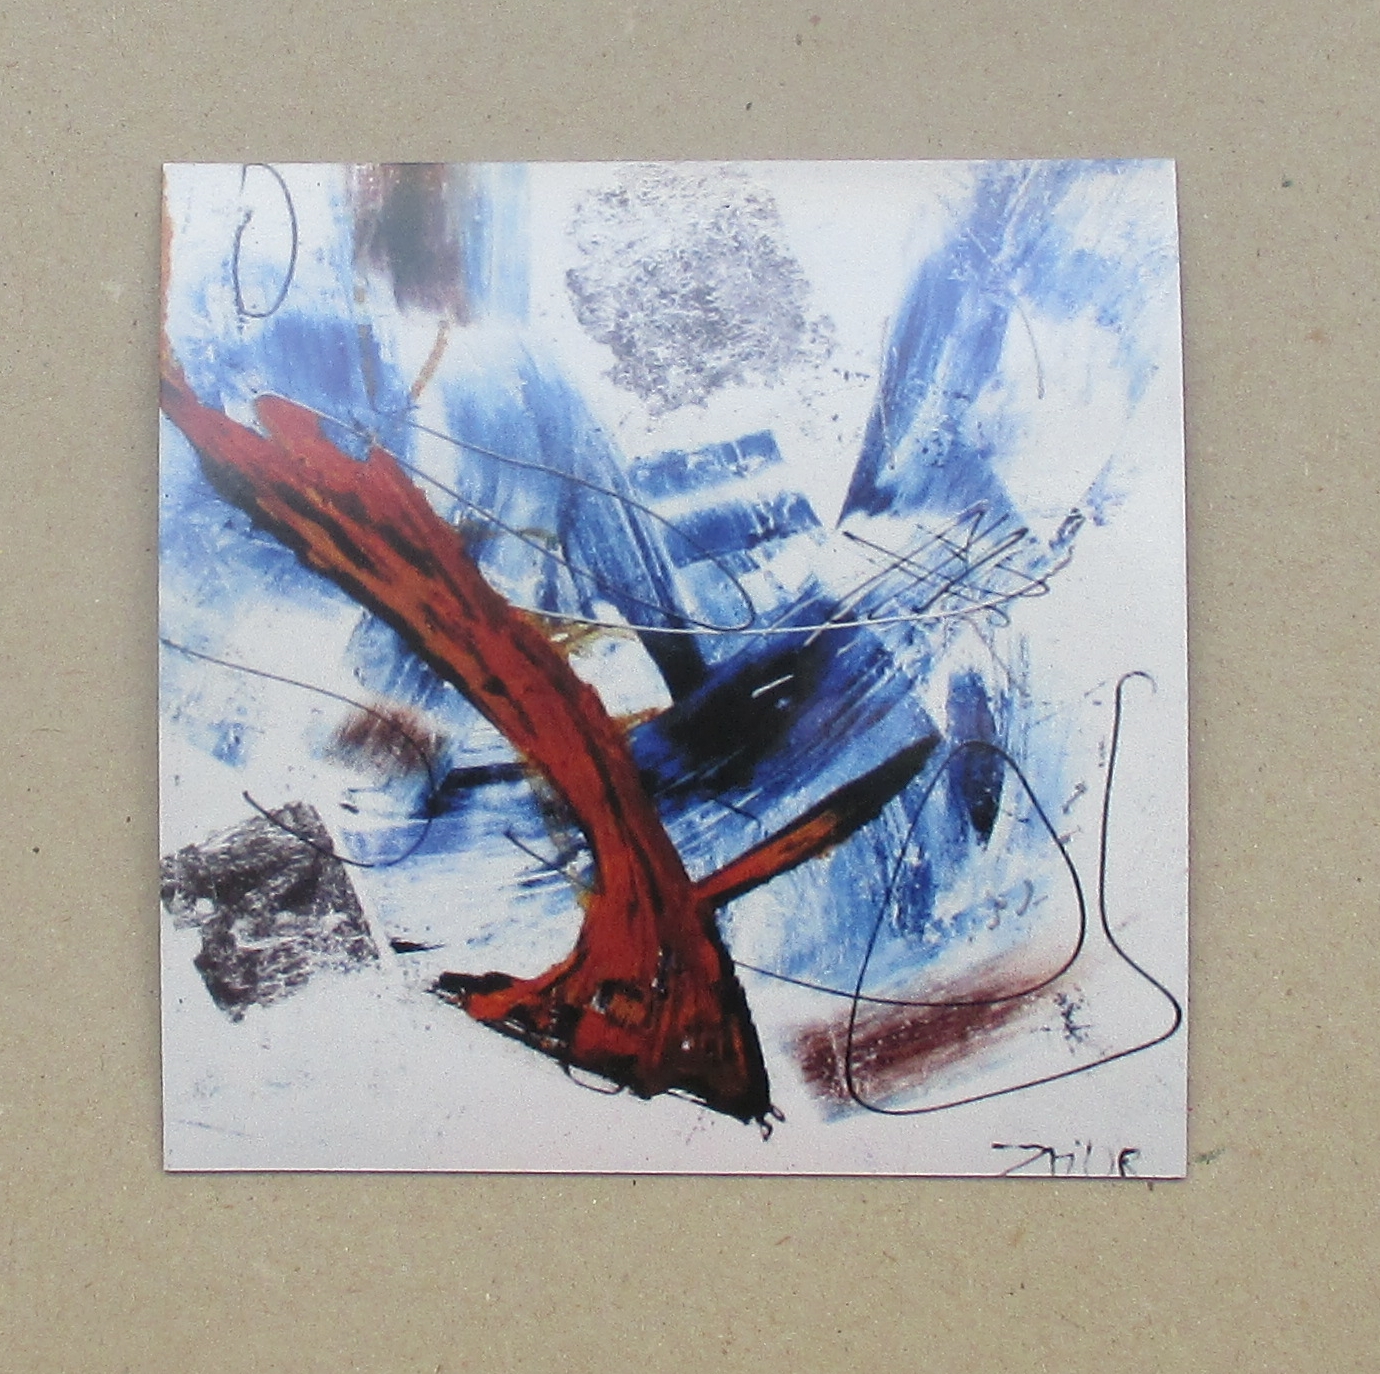 1x abstrakt blau 10x10 cm auf Magnet gedruckt - signiert/x/10 numeriert kostenloser Versand 2